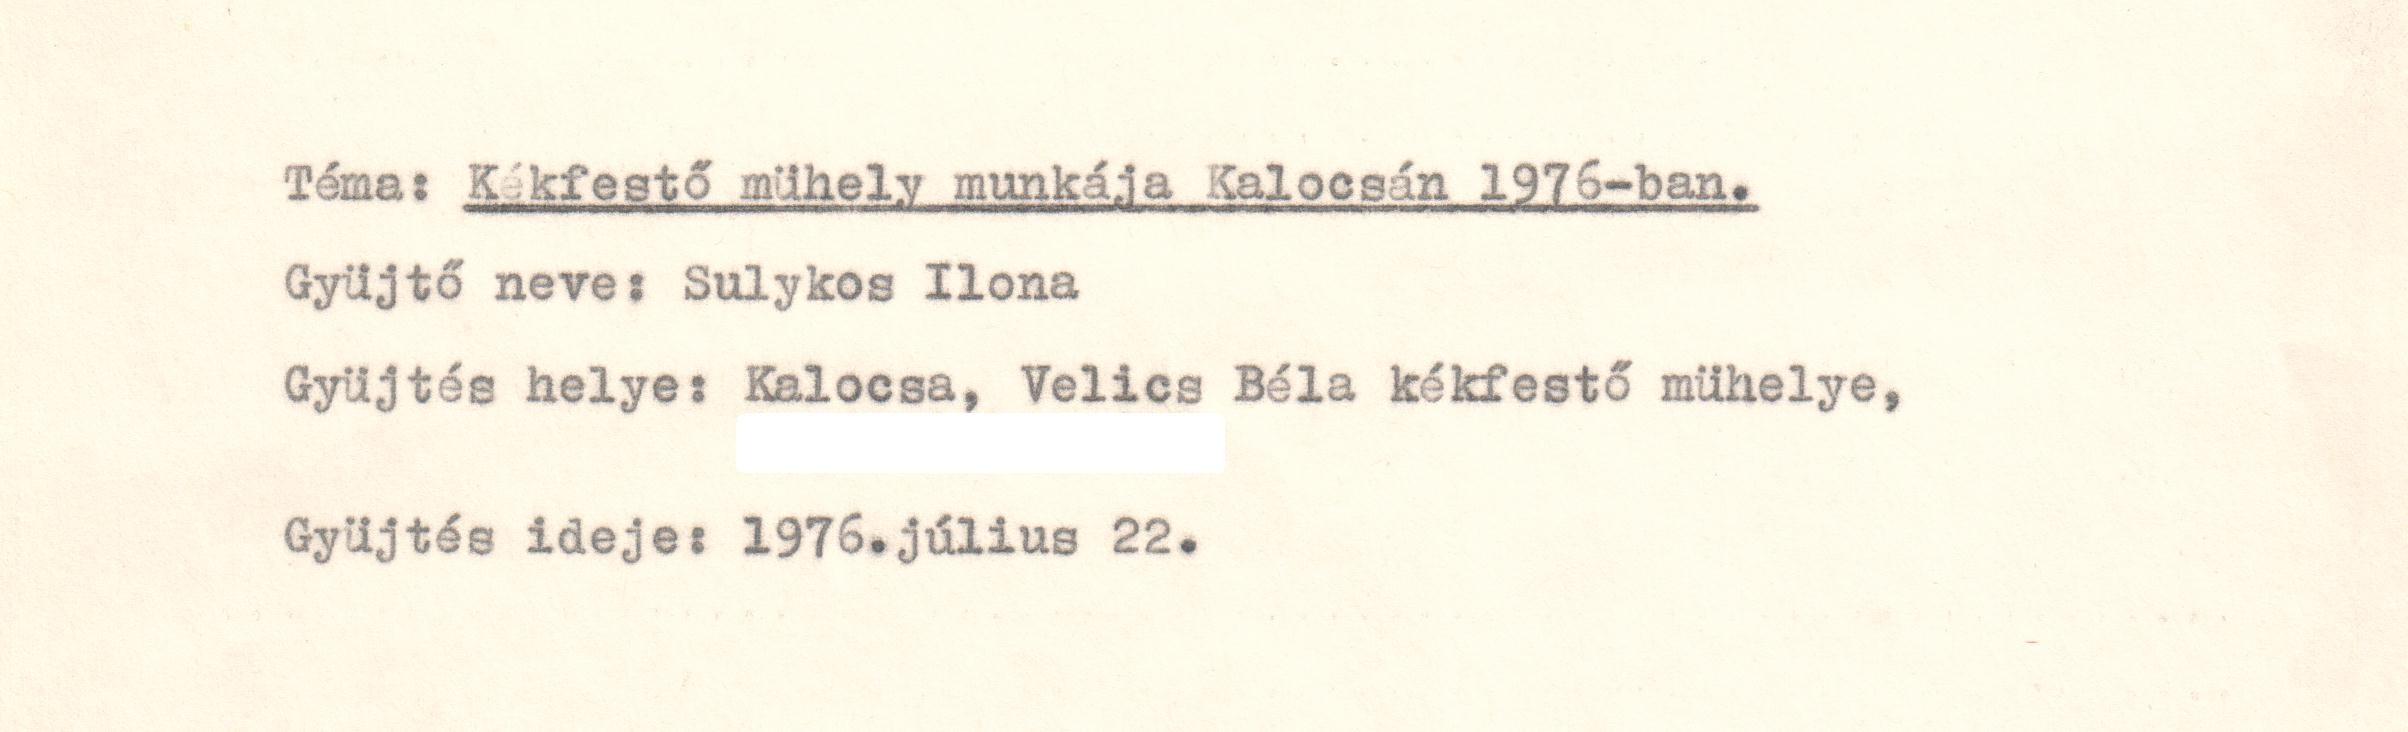 "Kékfestő műhely Kalocsán 1976-ban" témájú néprajzi gyűjtés gépirata. (Viski Károly Múzeum Kalocsa RR-F)